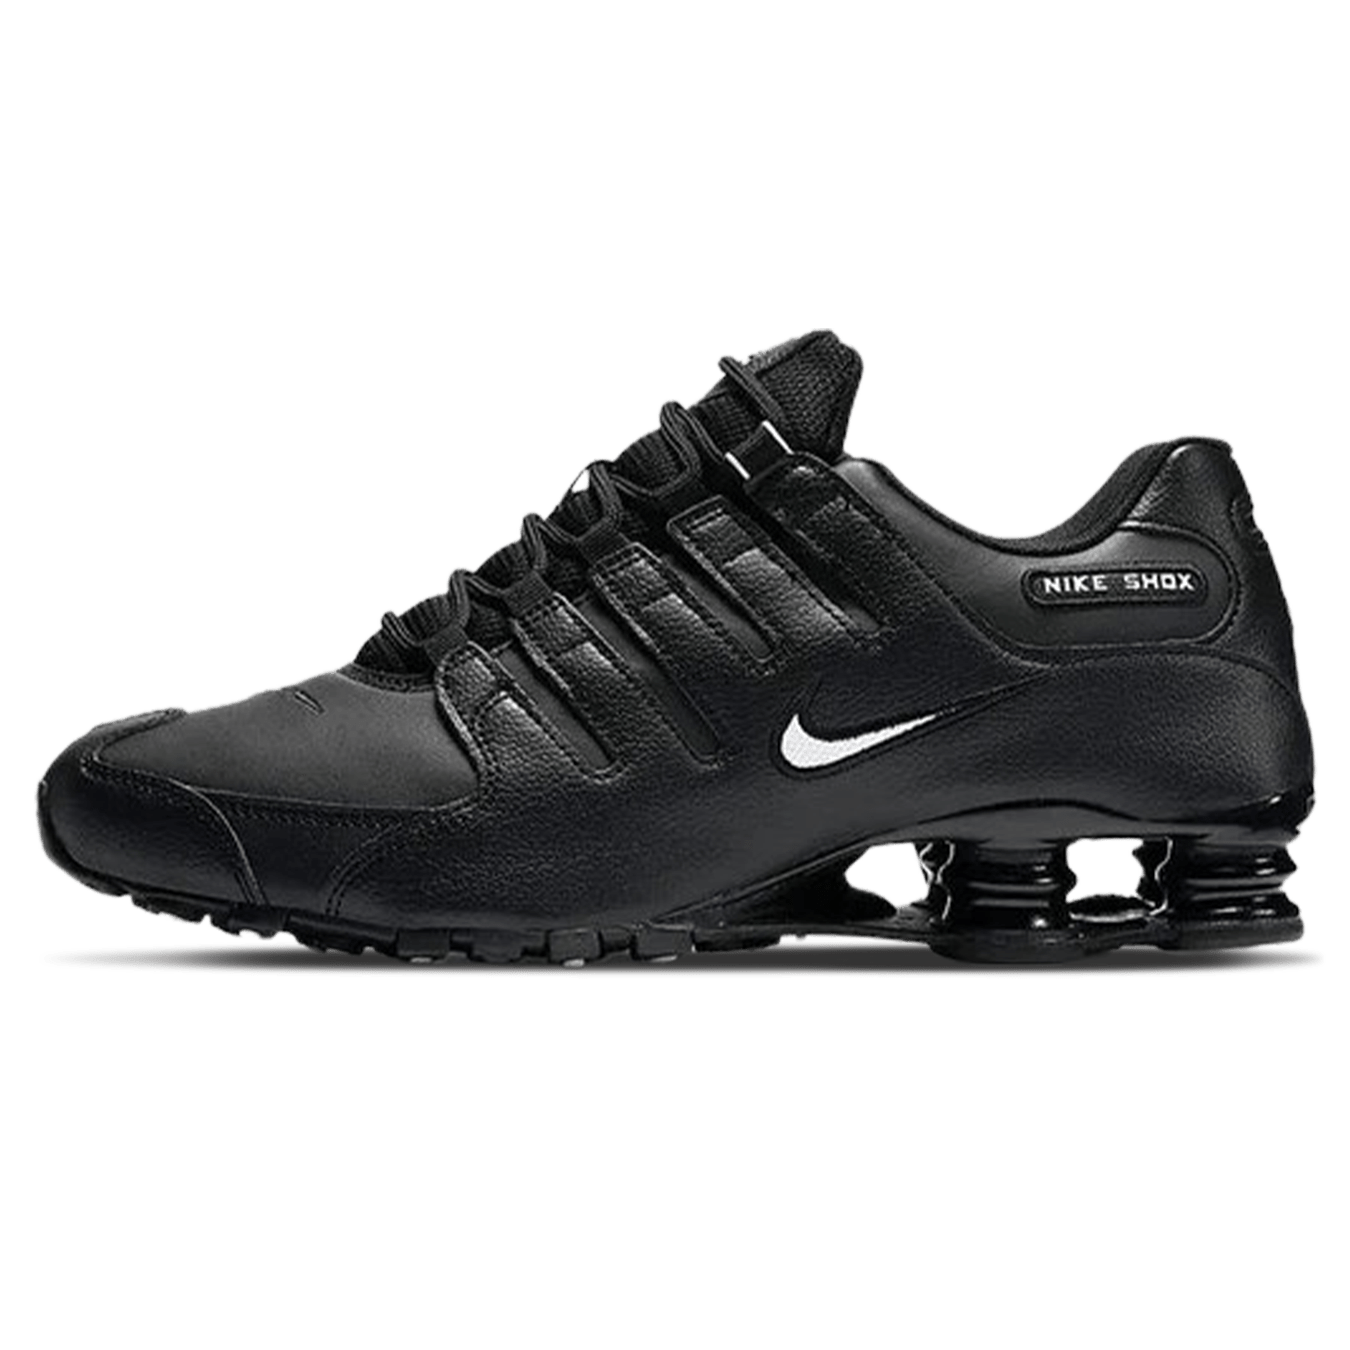 Nike Shox NZ 'Black' — Kick